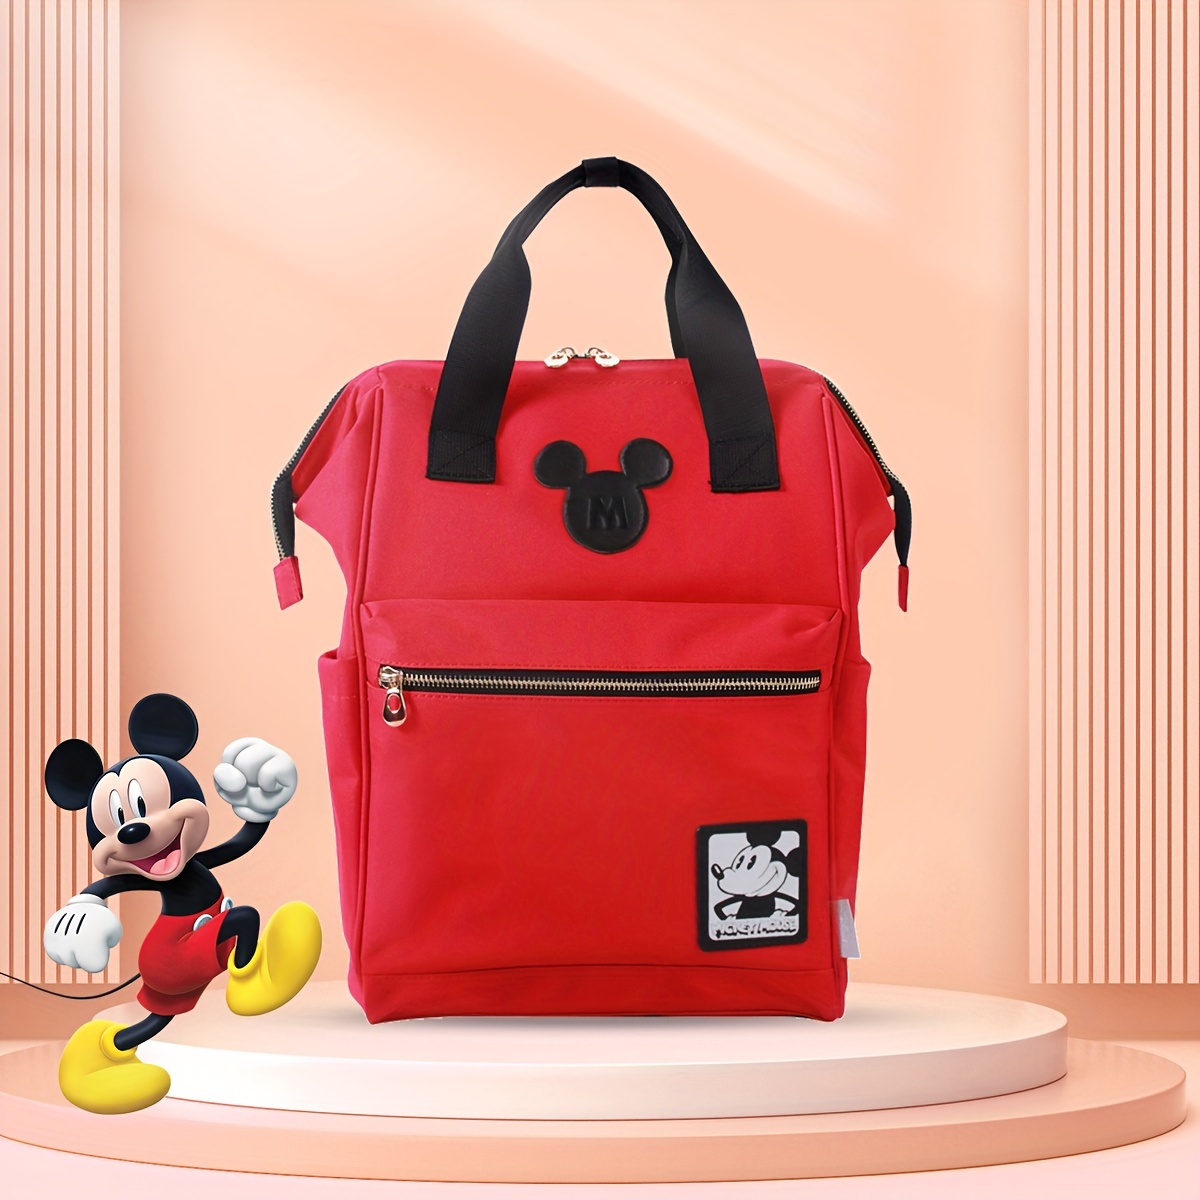 Petite valise week-end à roulettes Disney Minnie - Disney